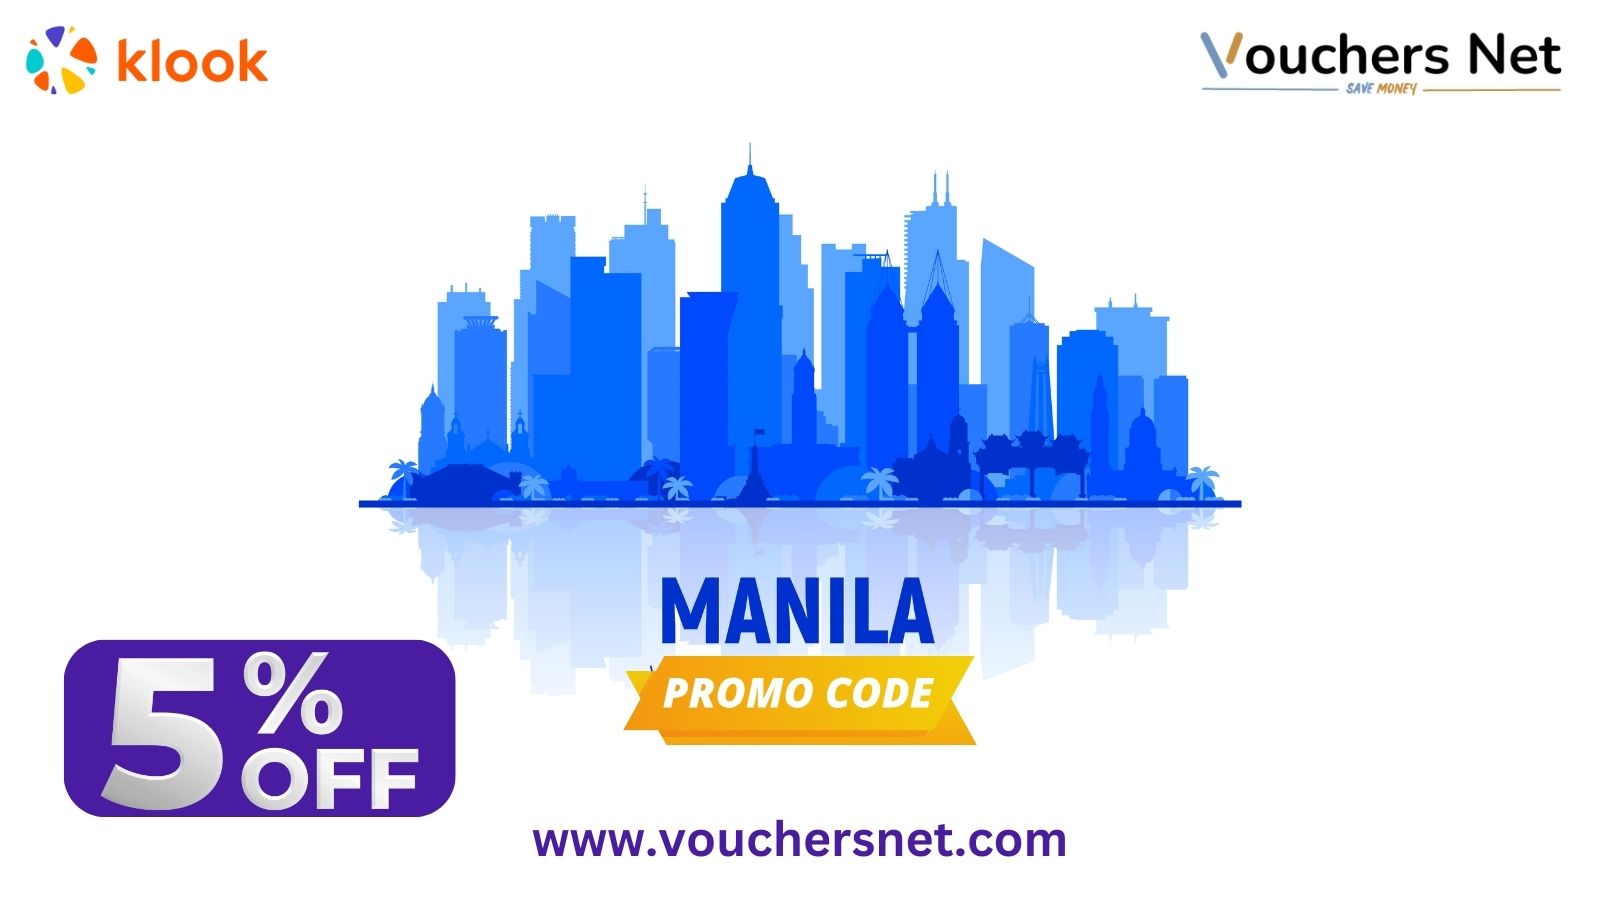 klook voucher code philippines